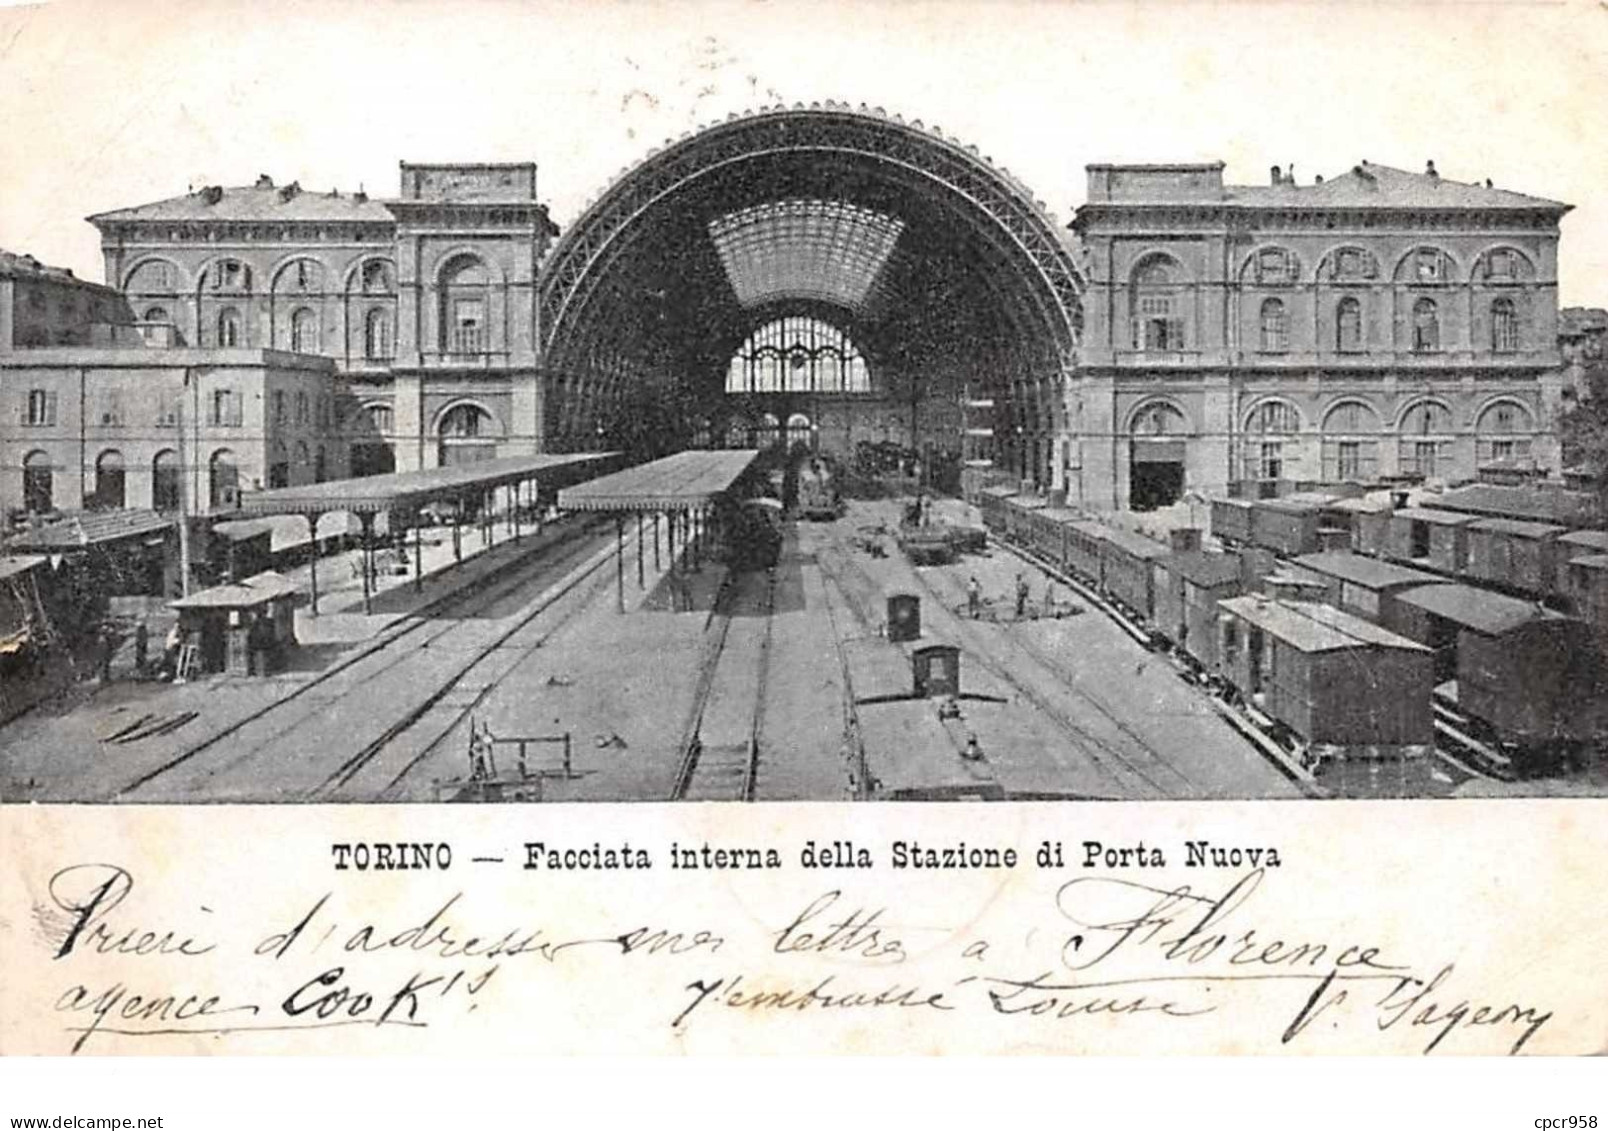 Italie - N°60817 - TORINO - Facciata Interna Della Stazione Di Porta Nuova - Train - Andere Monumente & Gebäude